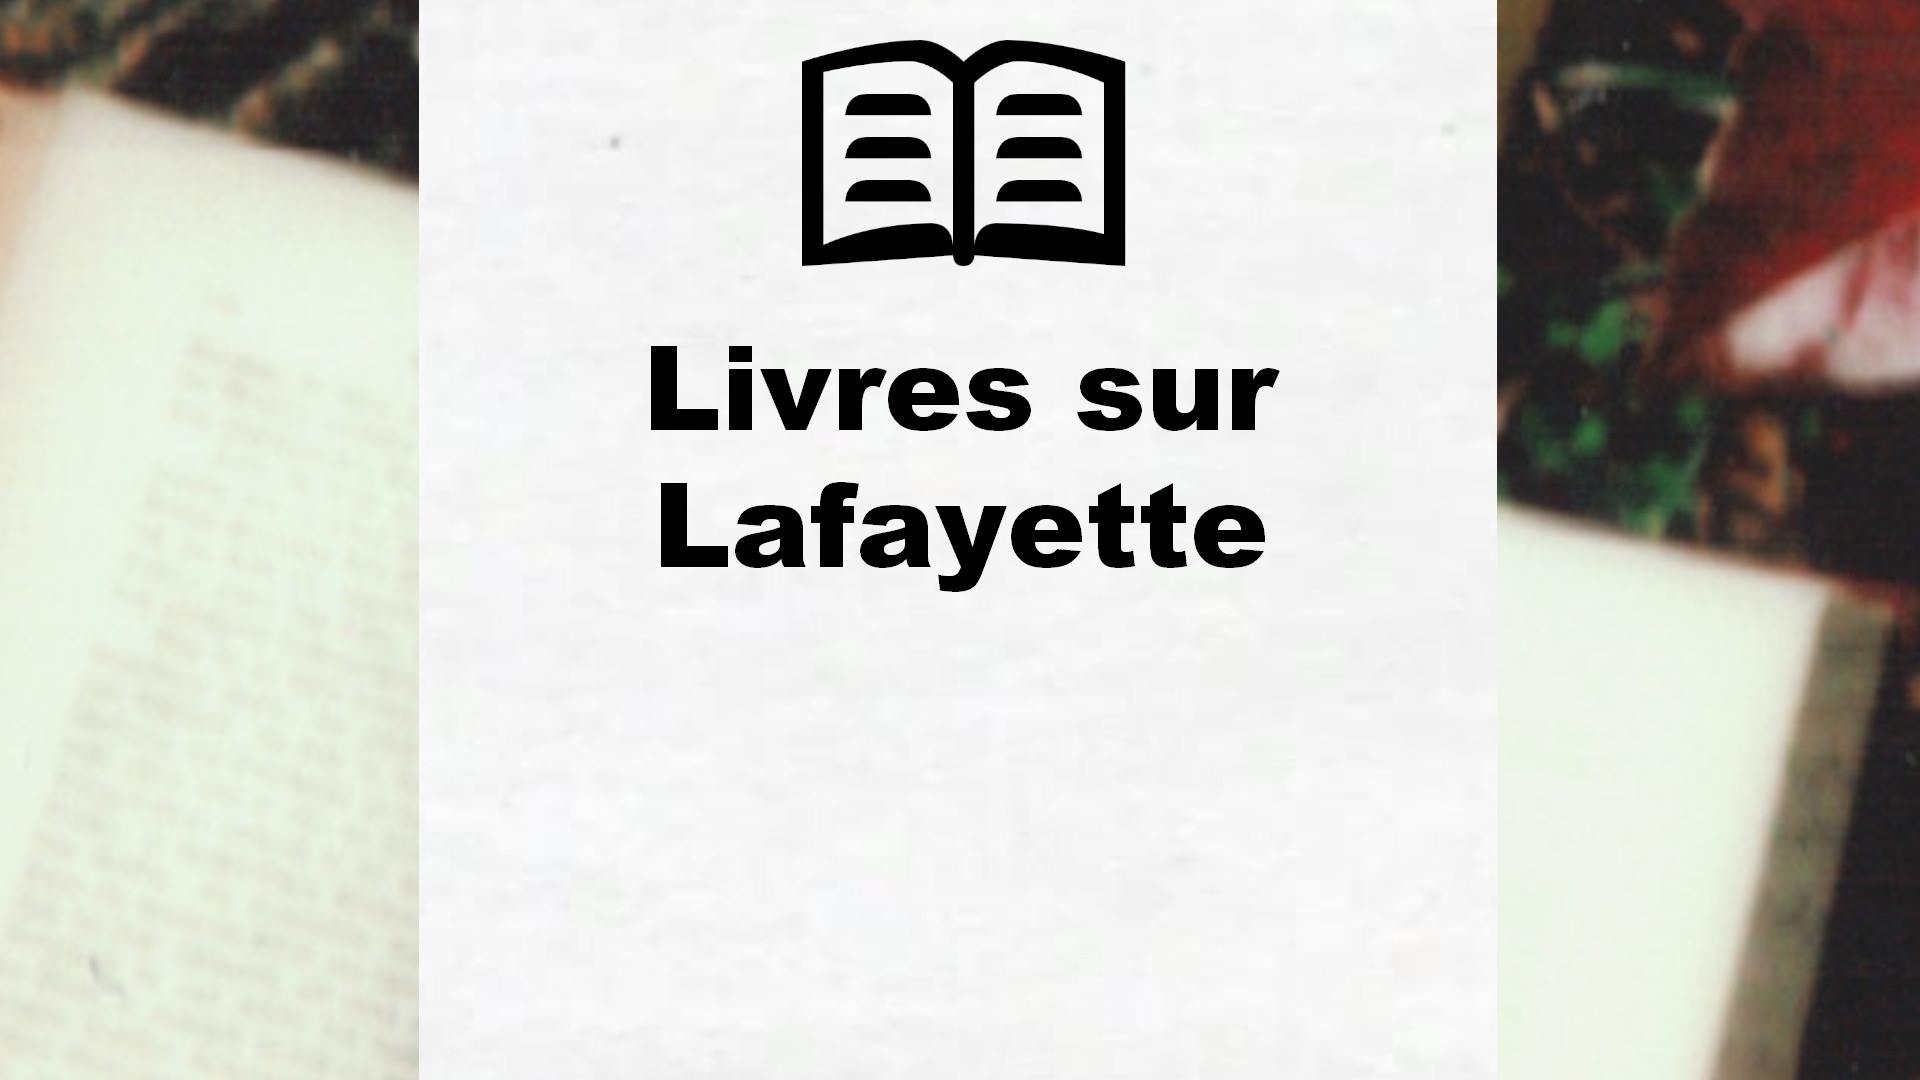 Livres sur Lafayette